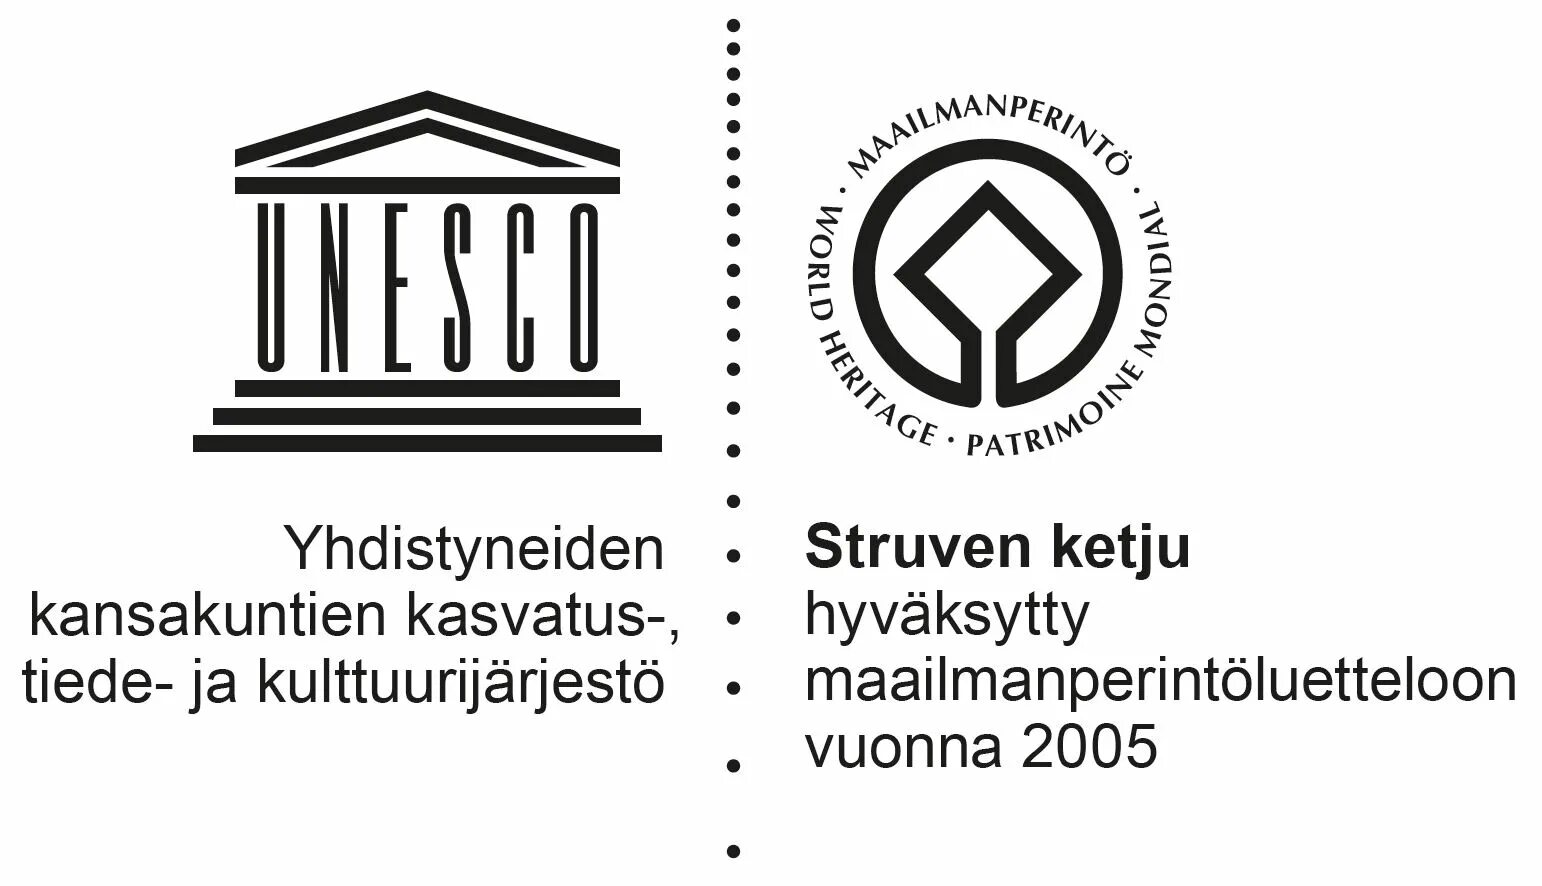 ЮНЕСКО. ЮНЕСКО эмблема. Символ ЮНЕСКО. Unesco site